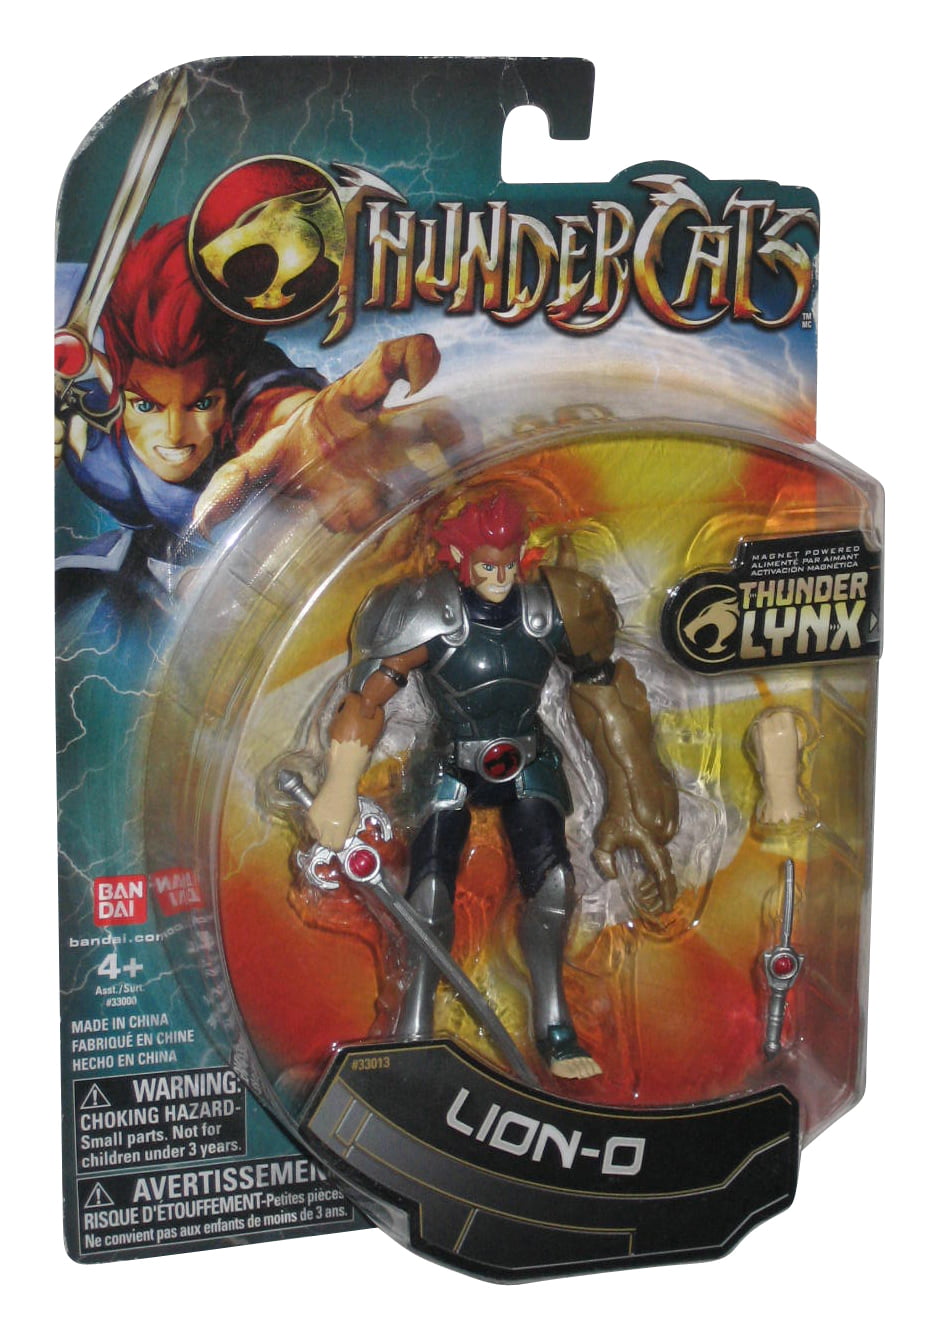 LION-O thundercats NEW cartoon network action figure 4" thunder lynx BANDAI cats 